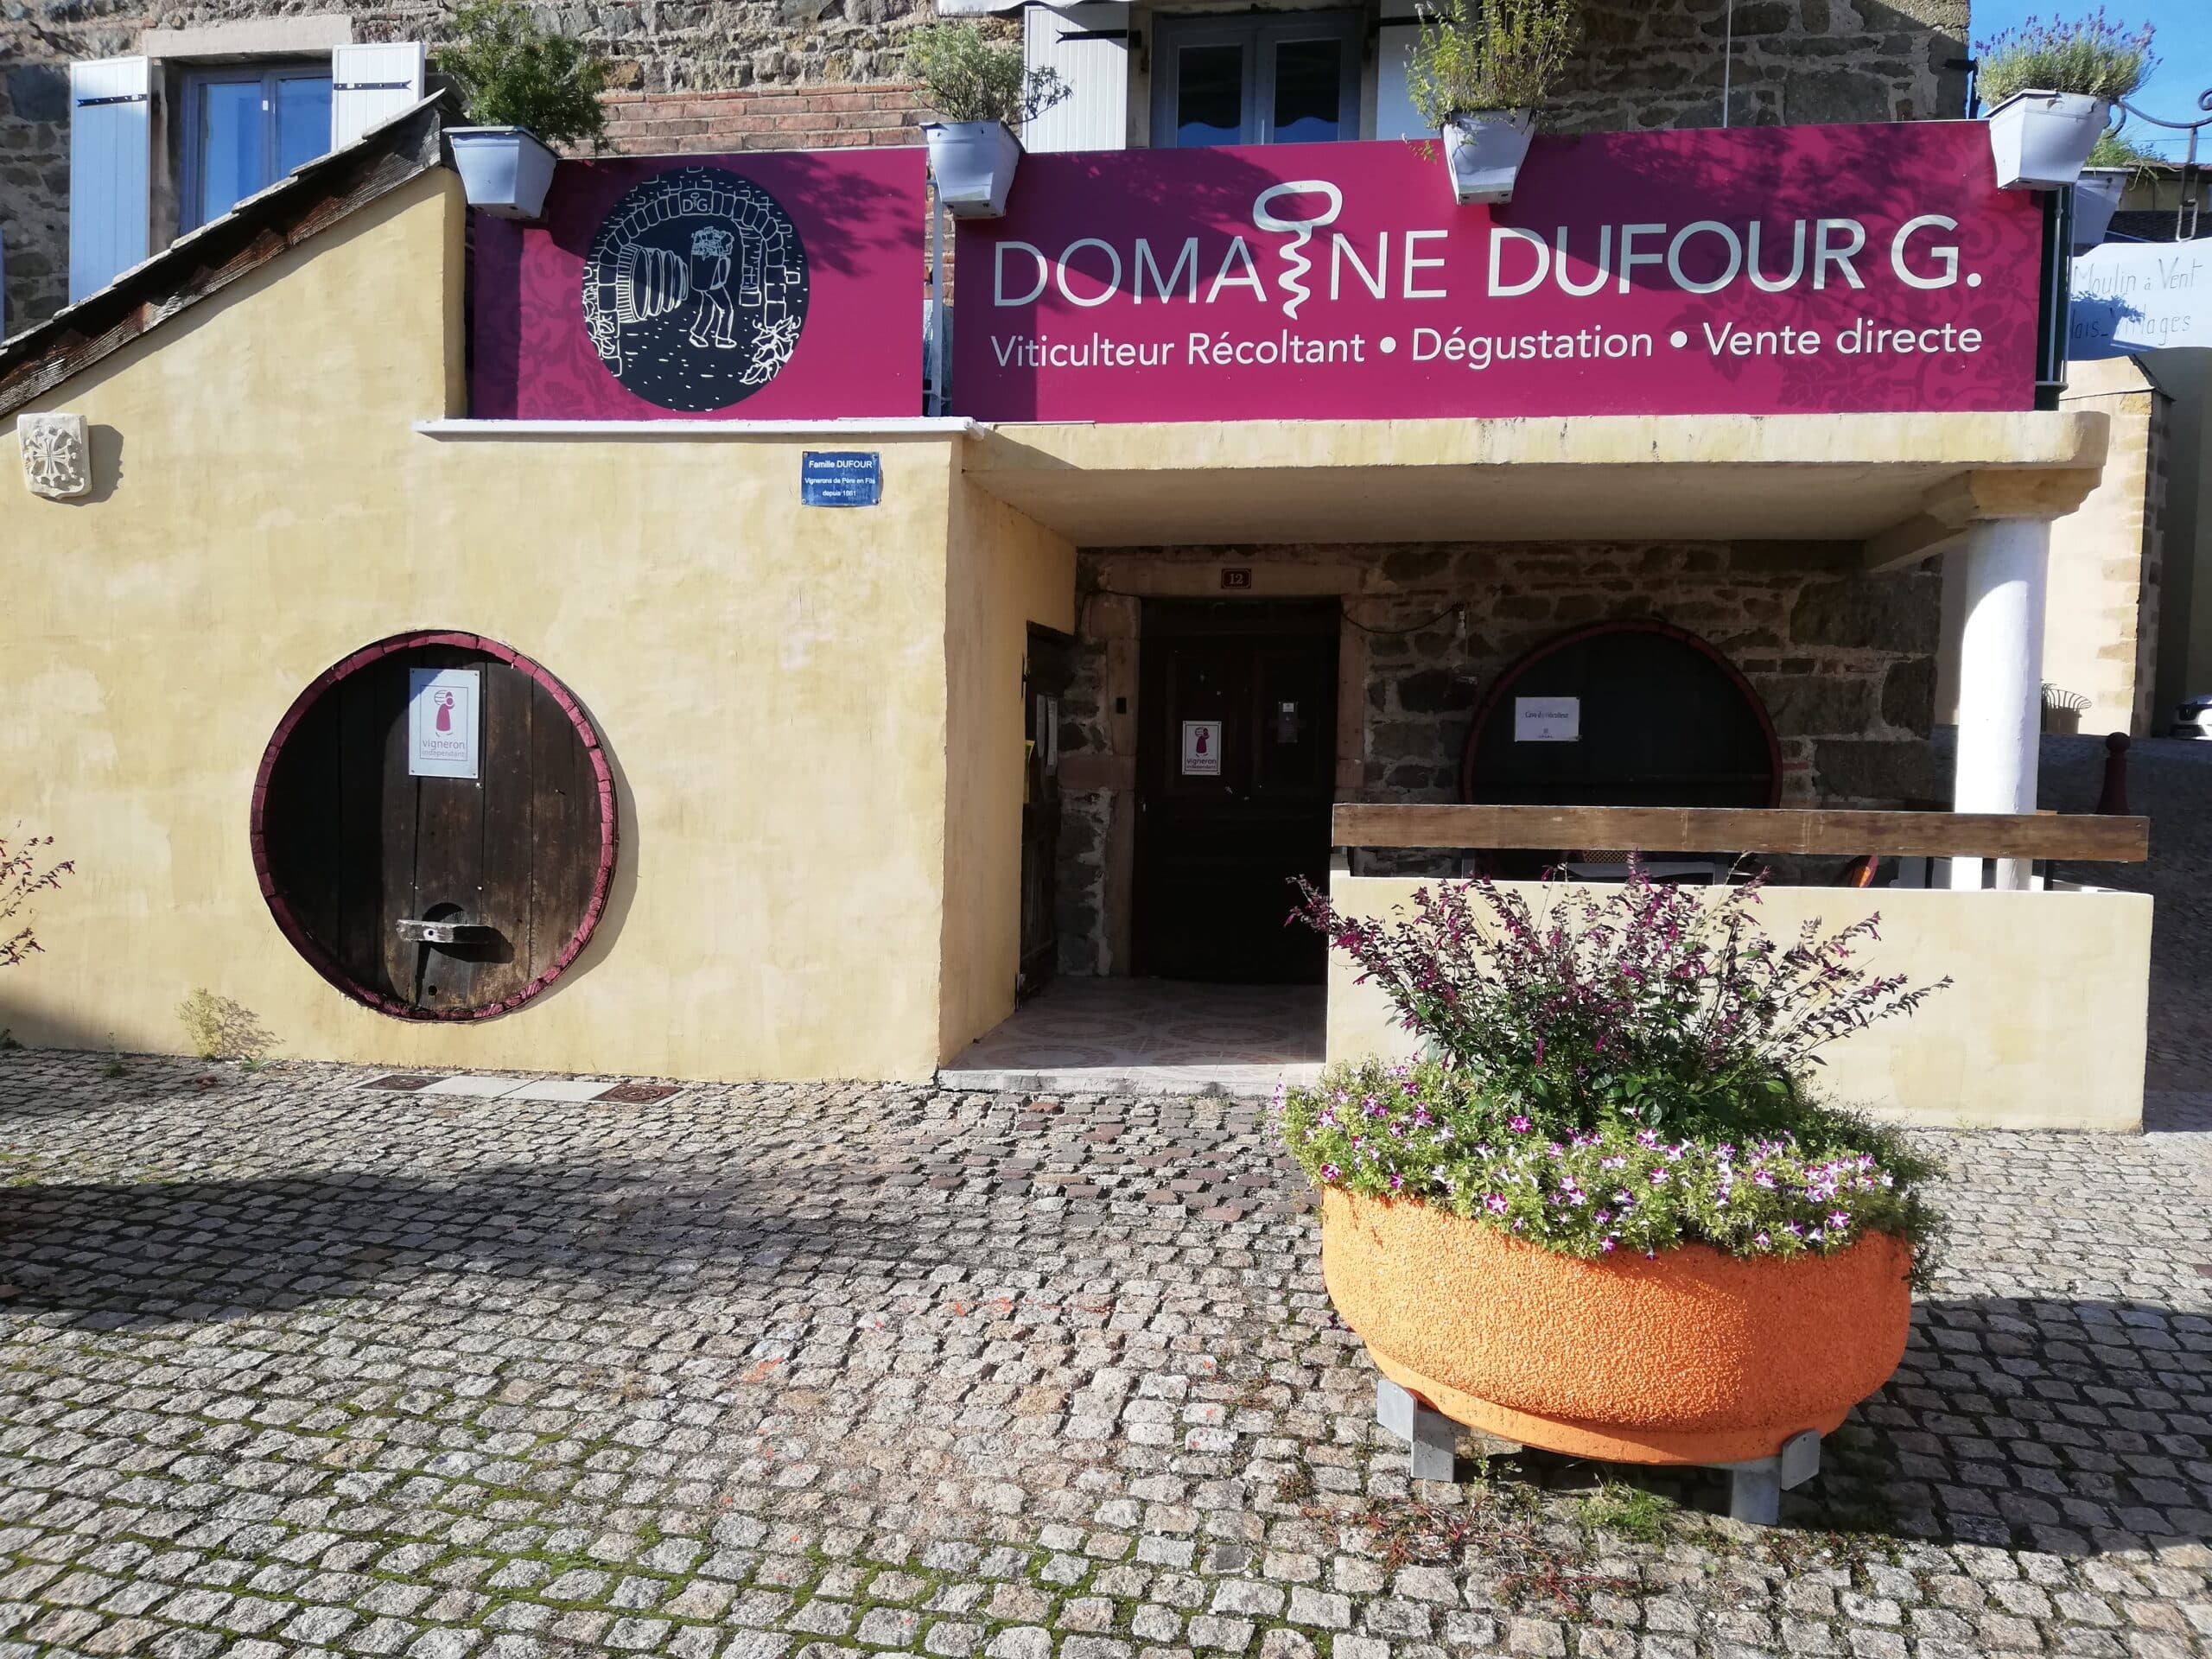 Domaine Dufour G